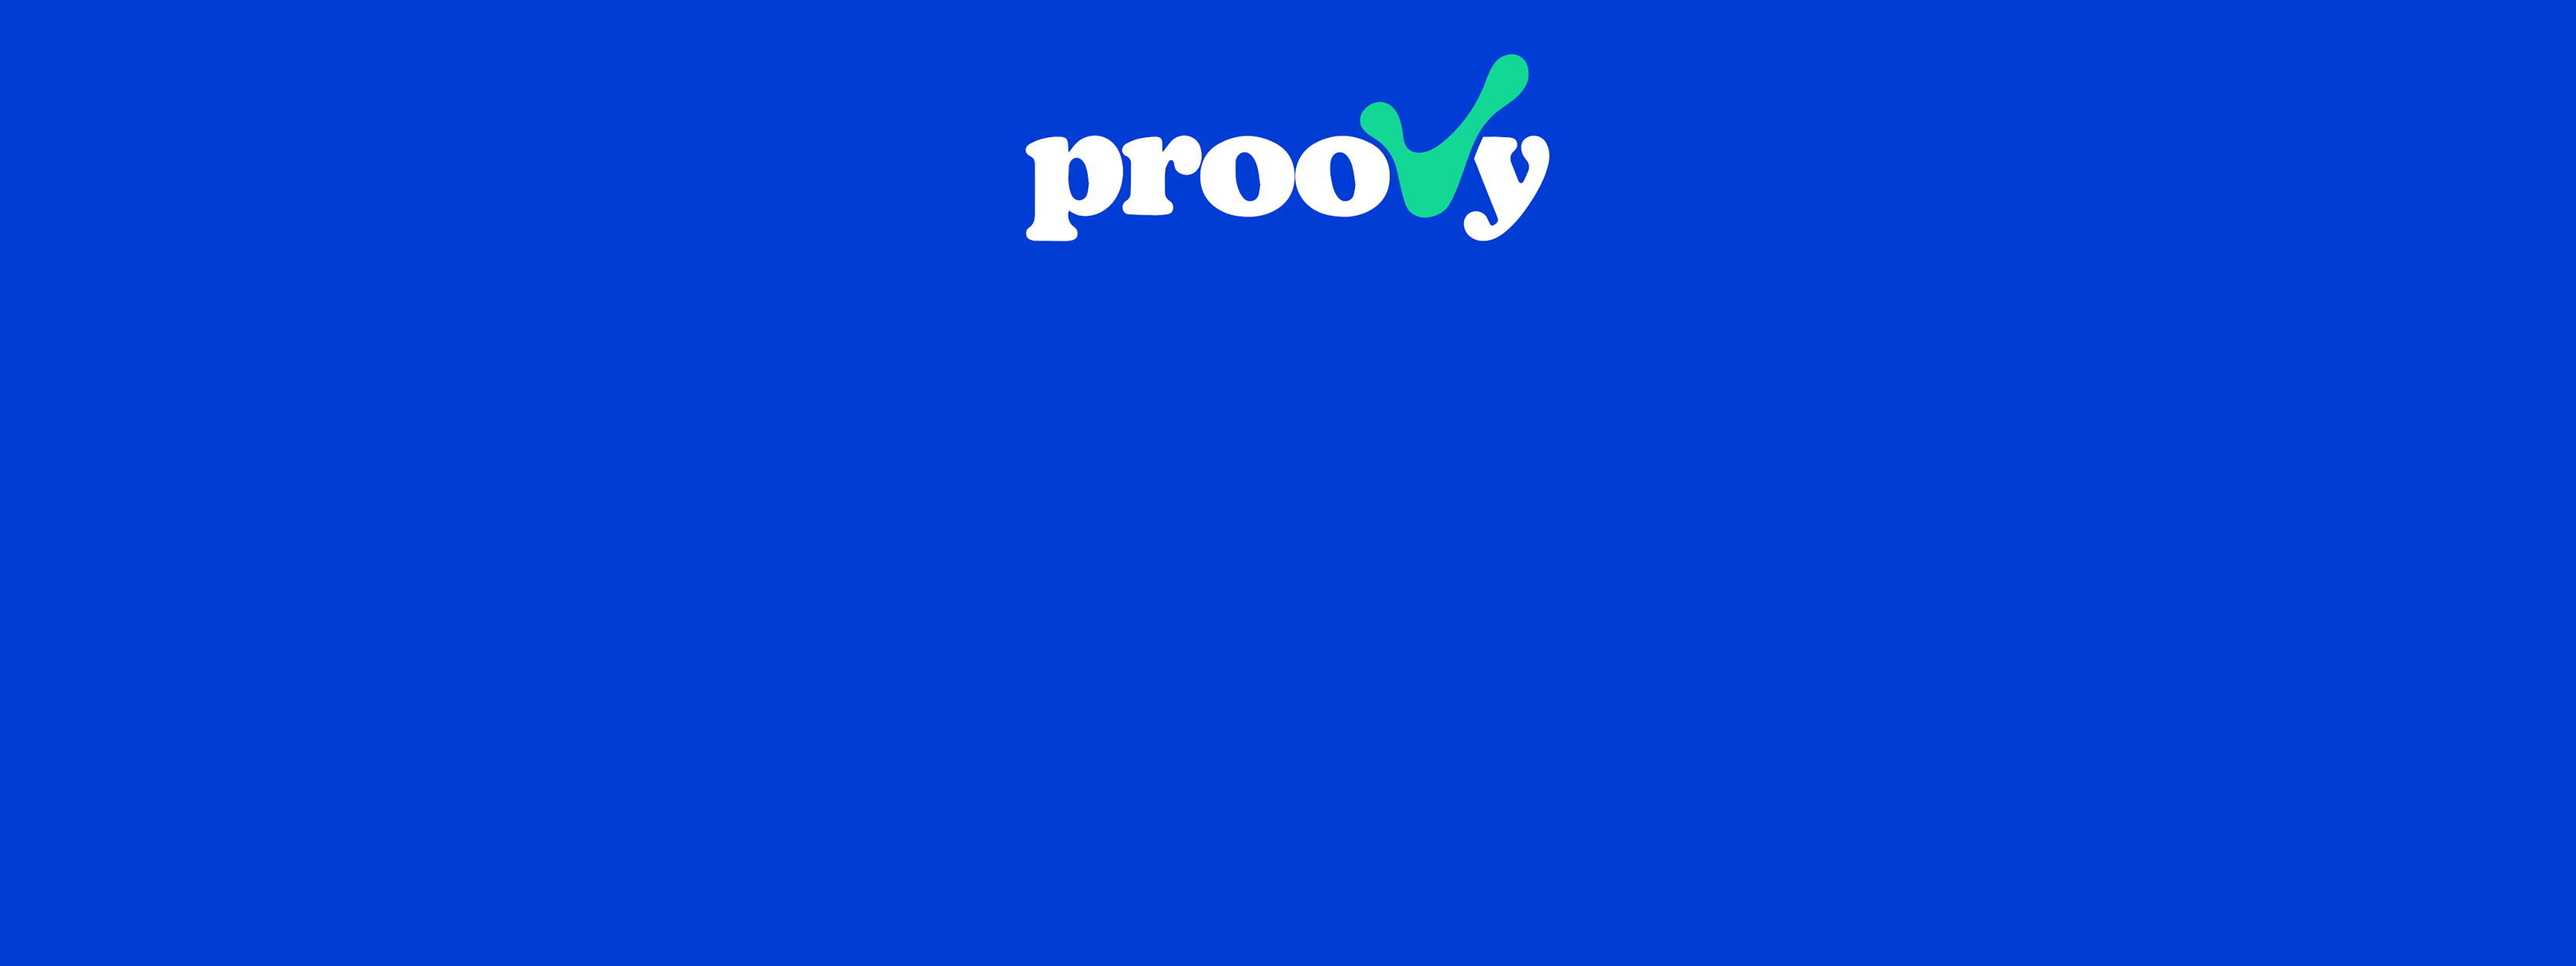 Proovy / startup von Berlin / Background